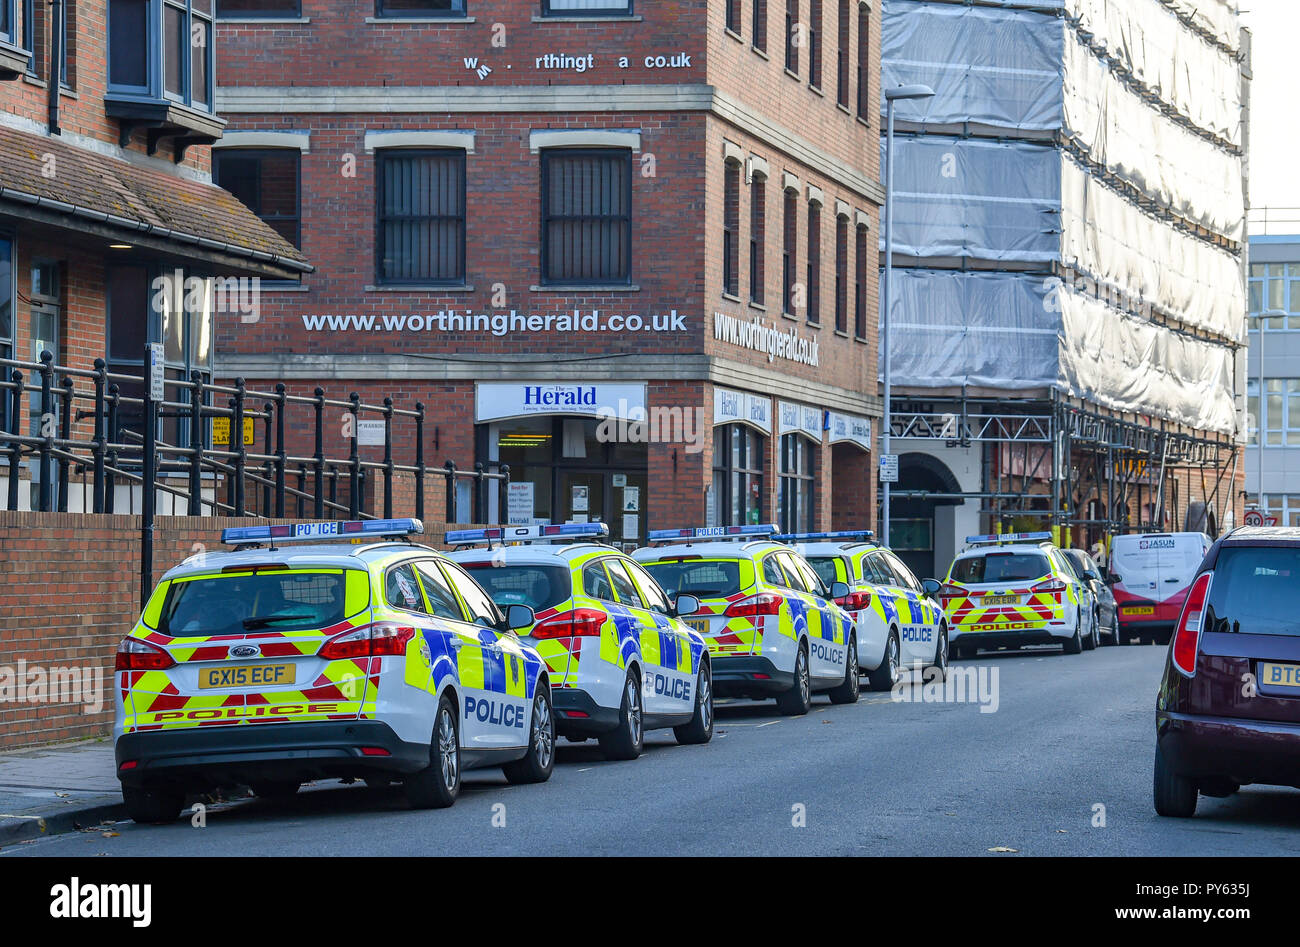 Worthing West Sussex Views & Einzelhandel - Lokale Papier Worthing Herald Büros mit Polizei Autos von der örtlichen Polizeidienststelle außerhalb Foto aufgenommen von Stockfoto